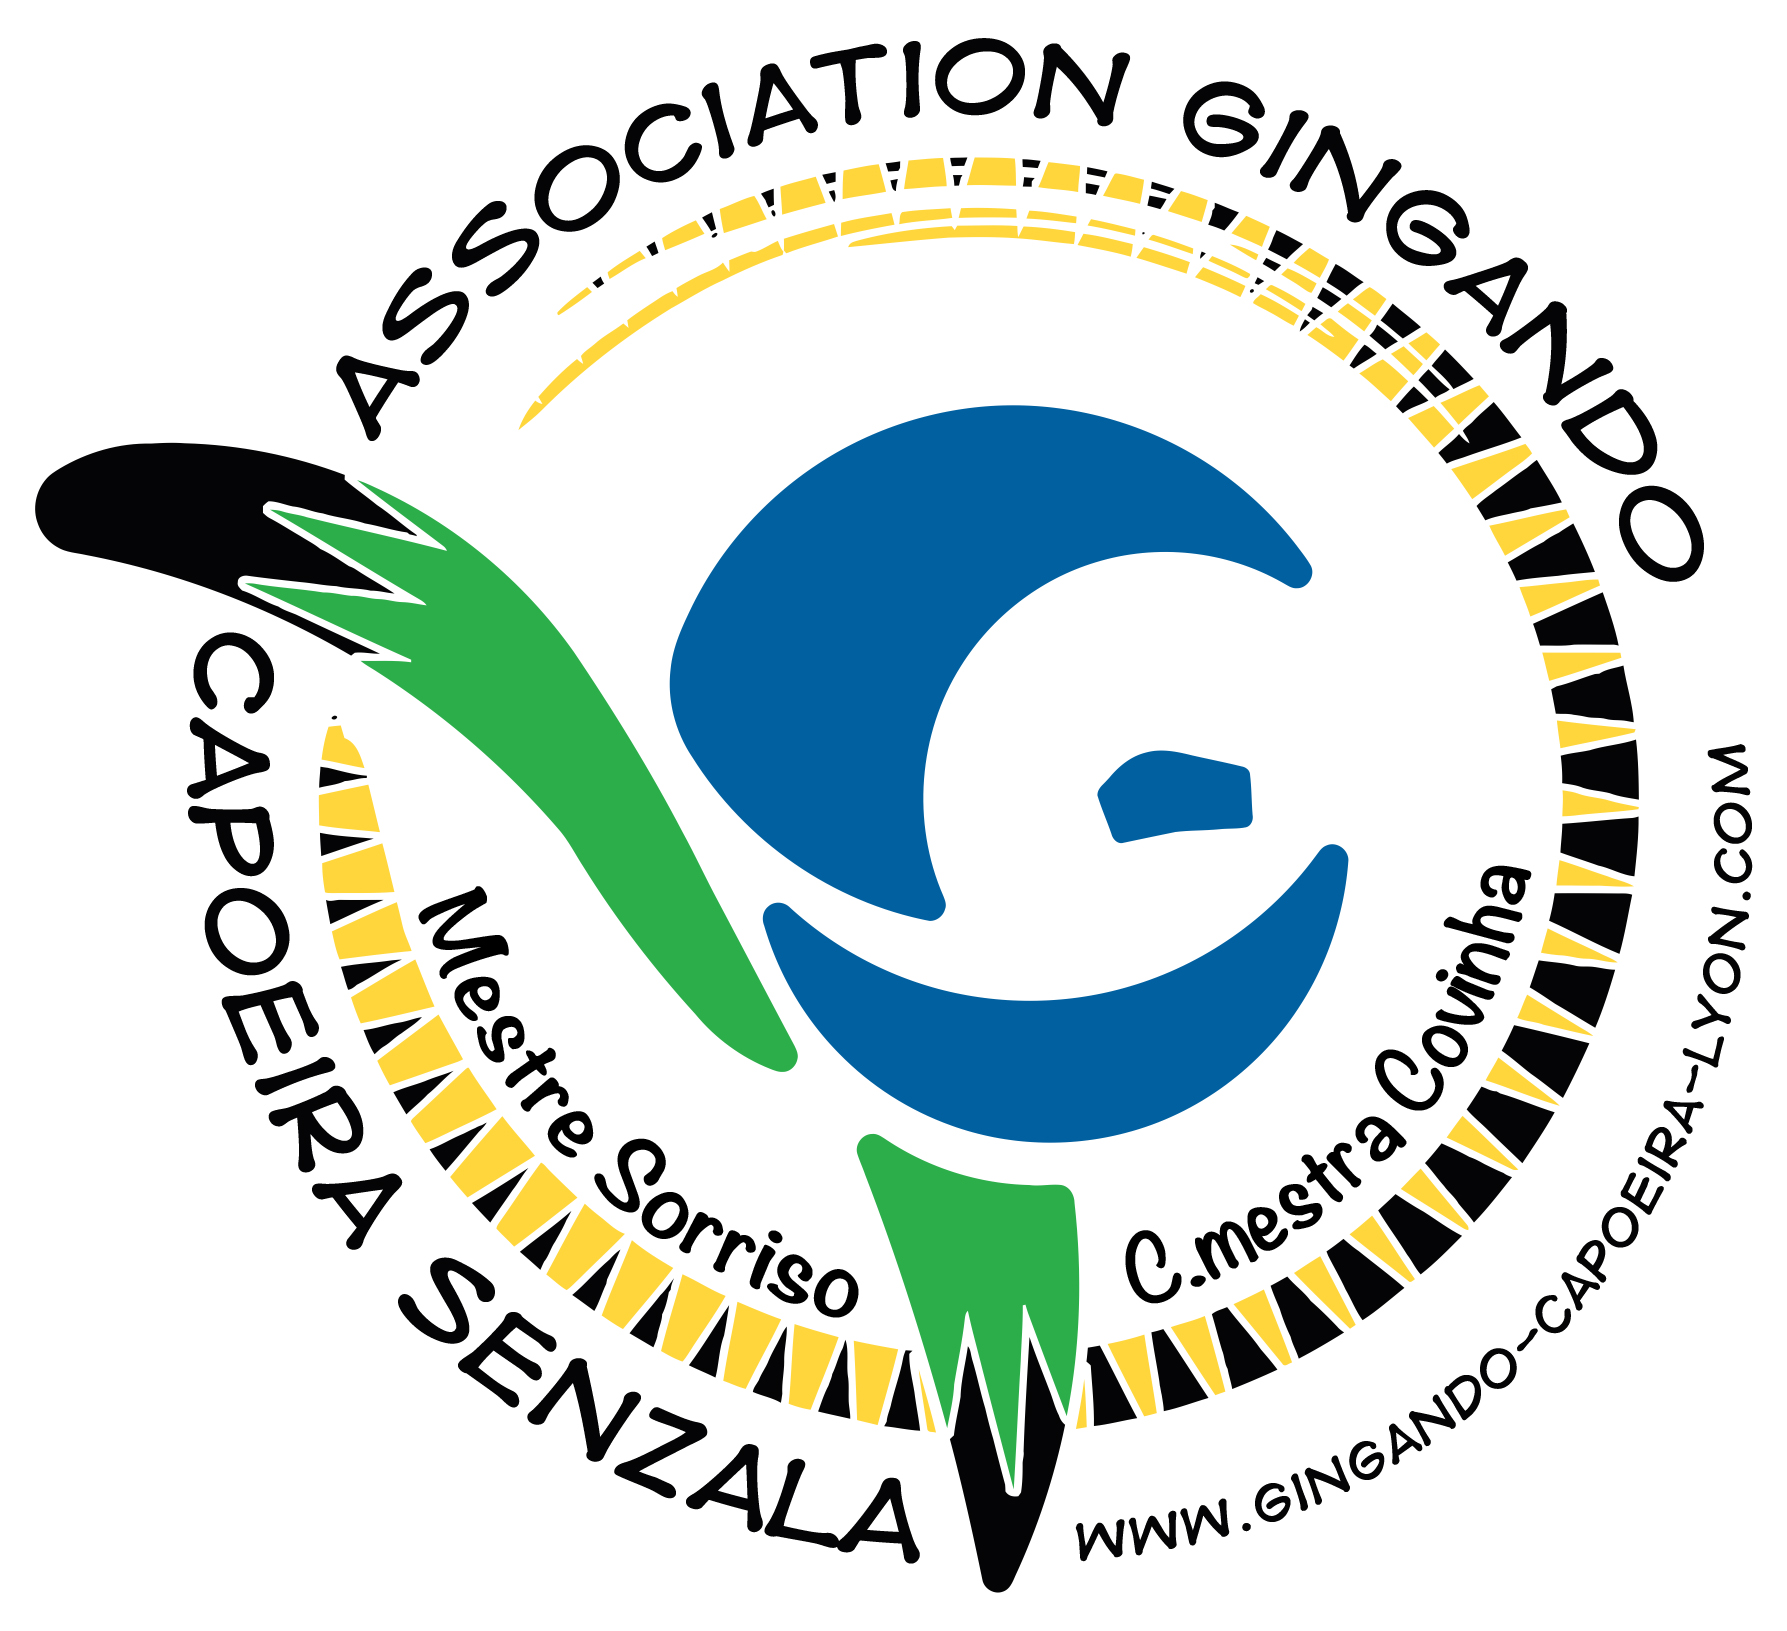 Association Gingando